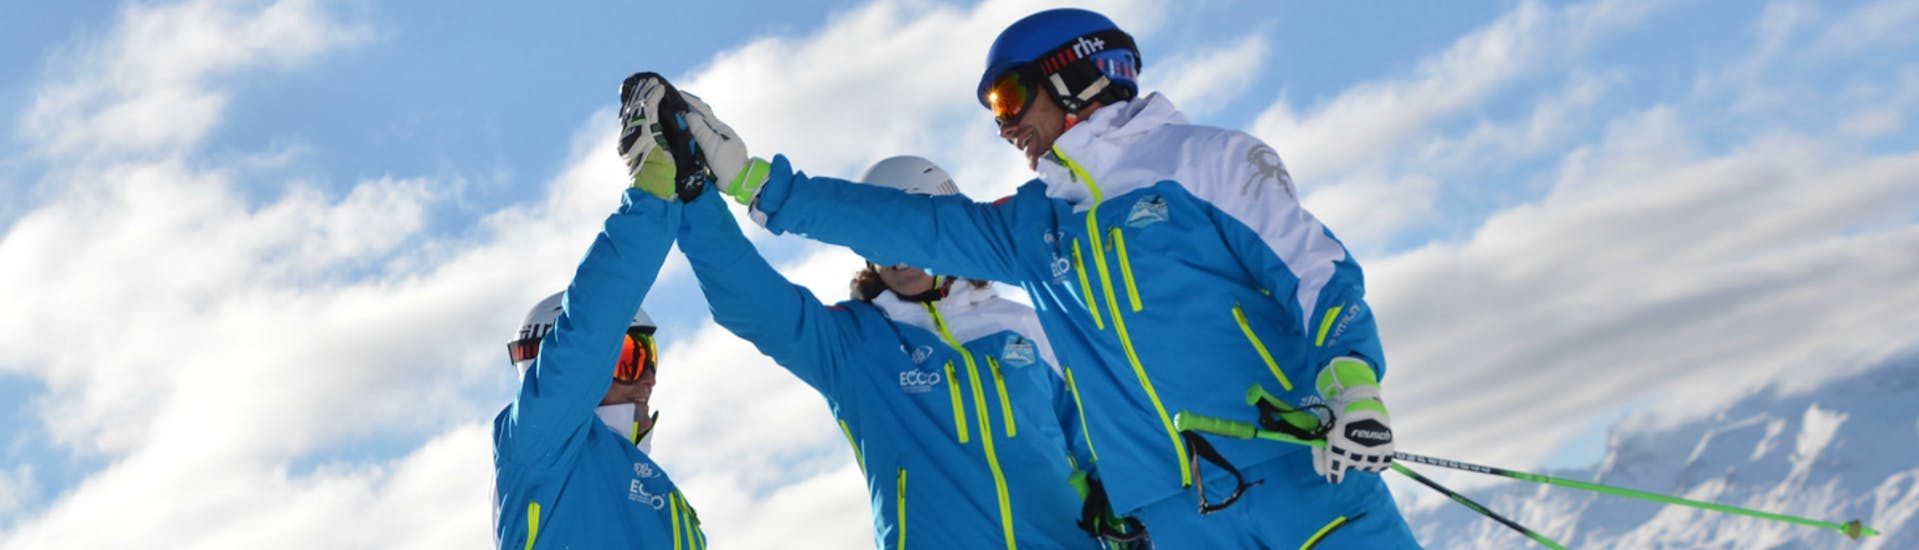 Drei Skilehrer der Skischule Silvaplana Top Snowsports geben sich während dem Kinder-Skikurs für Fortgeschrittene ein High-Five.